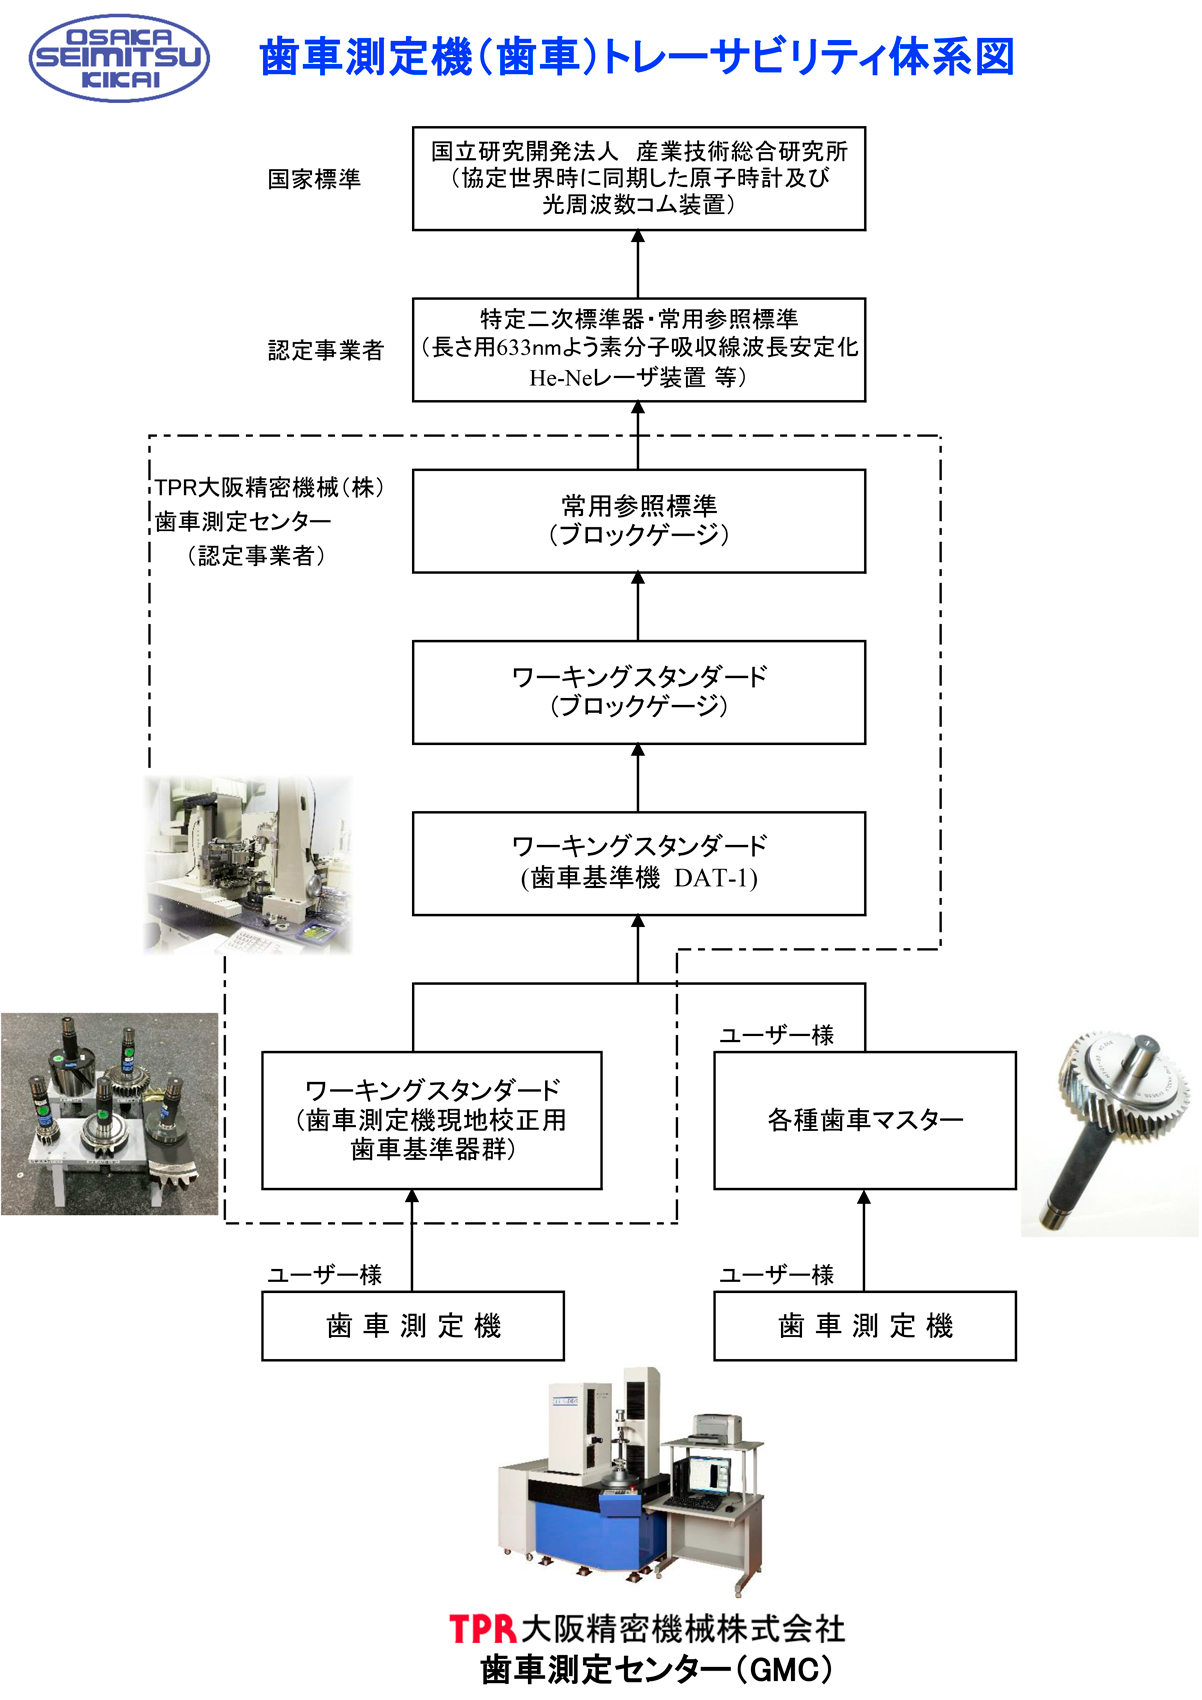 OSK 歯車測定機トレーサビリティ体系図